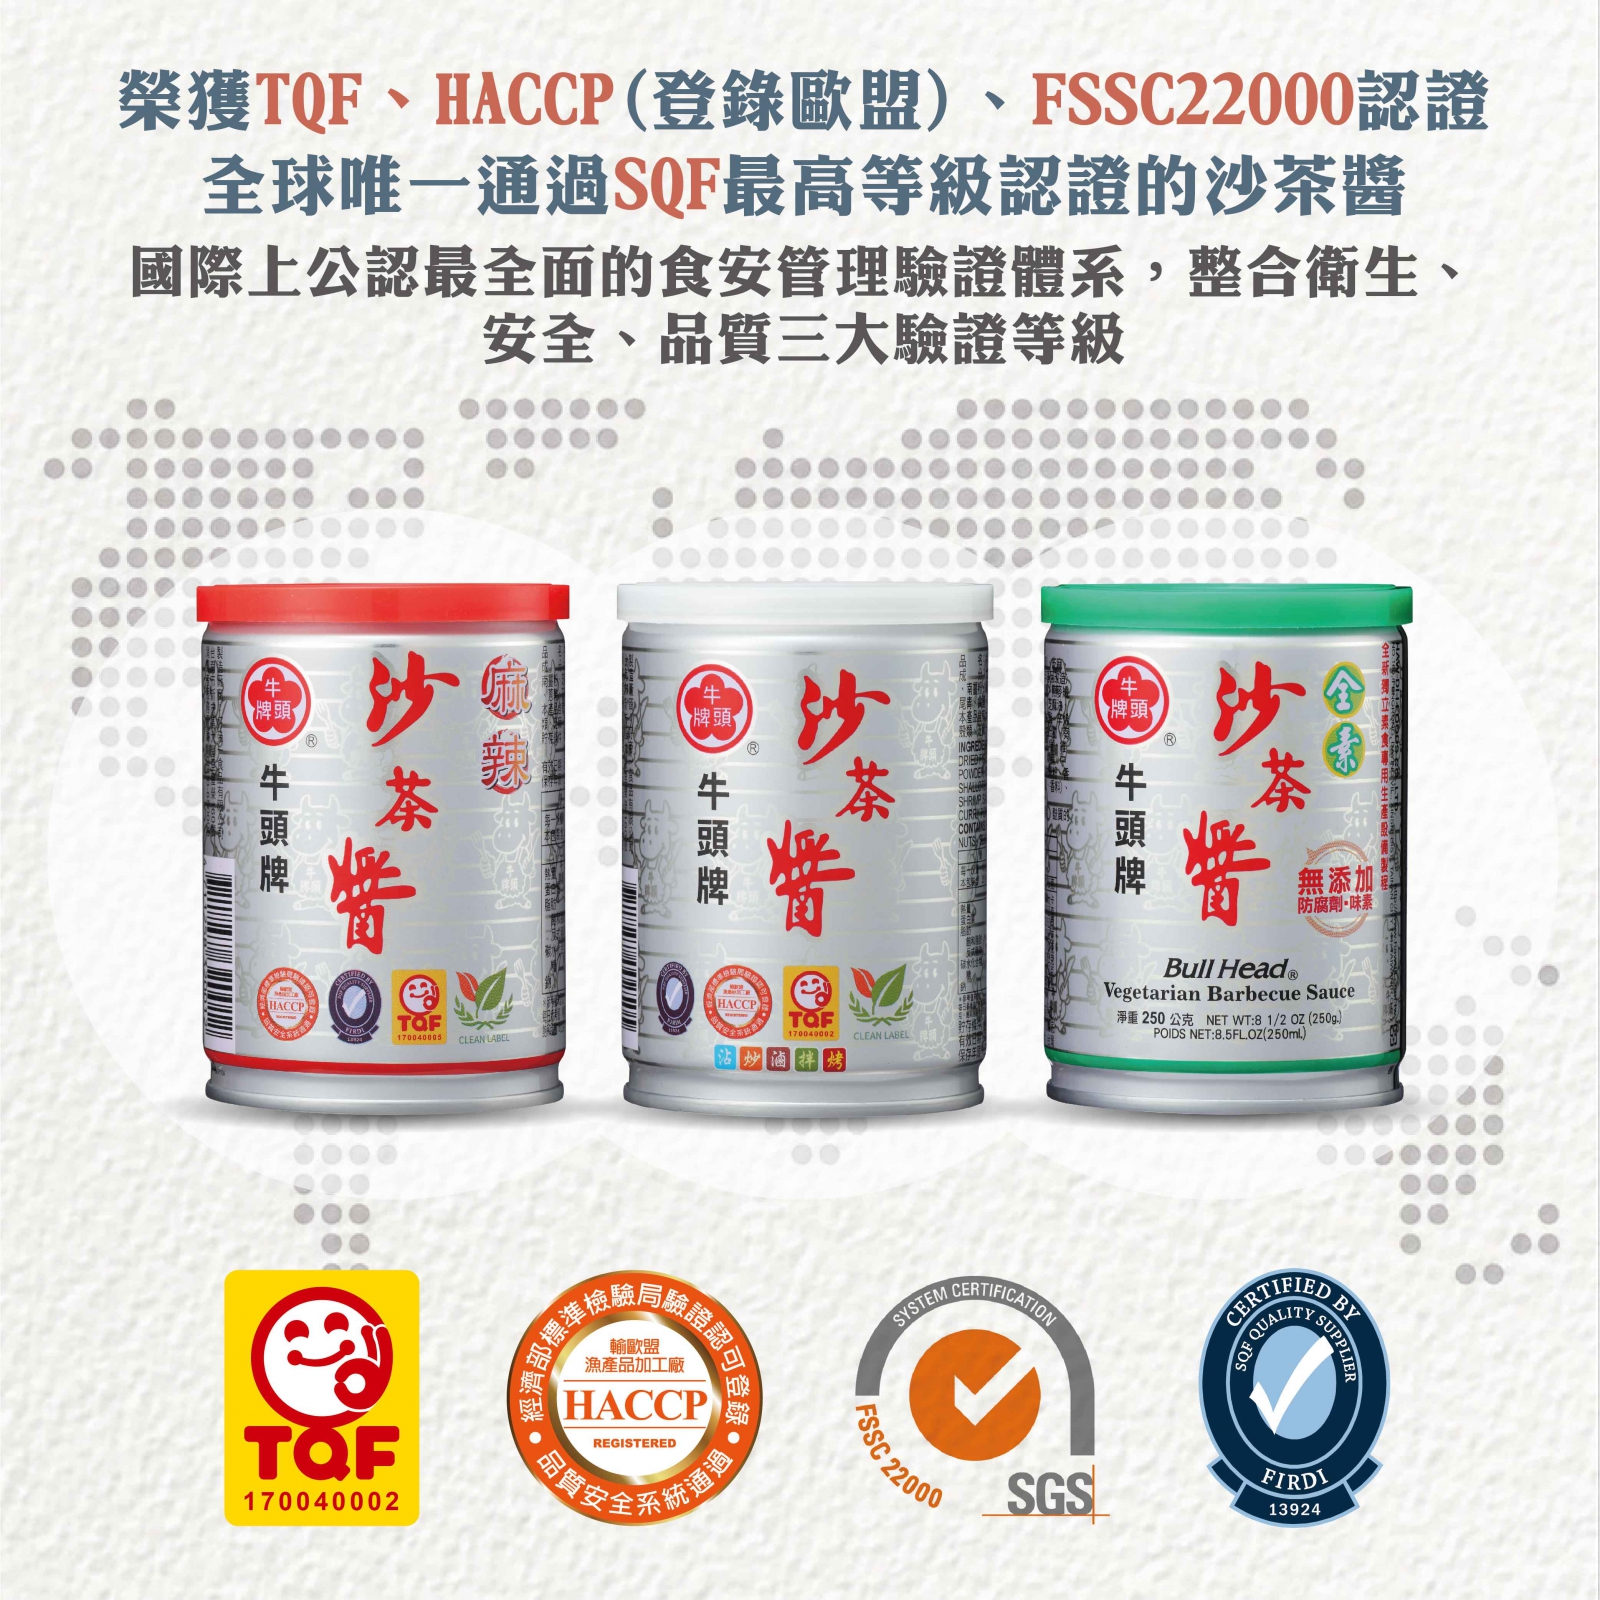 沙茶醬(素食)250g全台灣唯一榮獲多方認證(TQF、HACCP(登錄歐盟)、FSSC22000、SQF)的素食沙茶醬類產品。